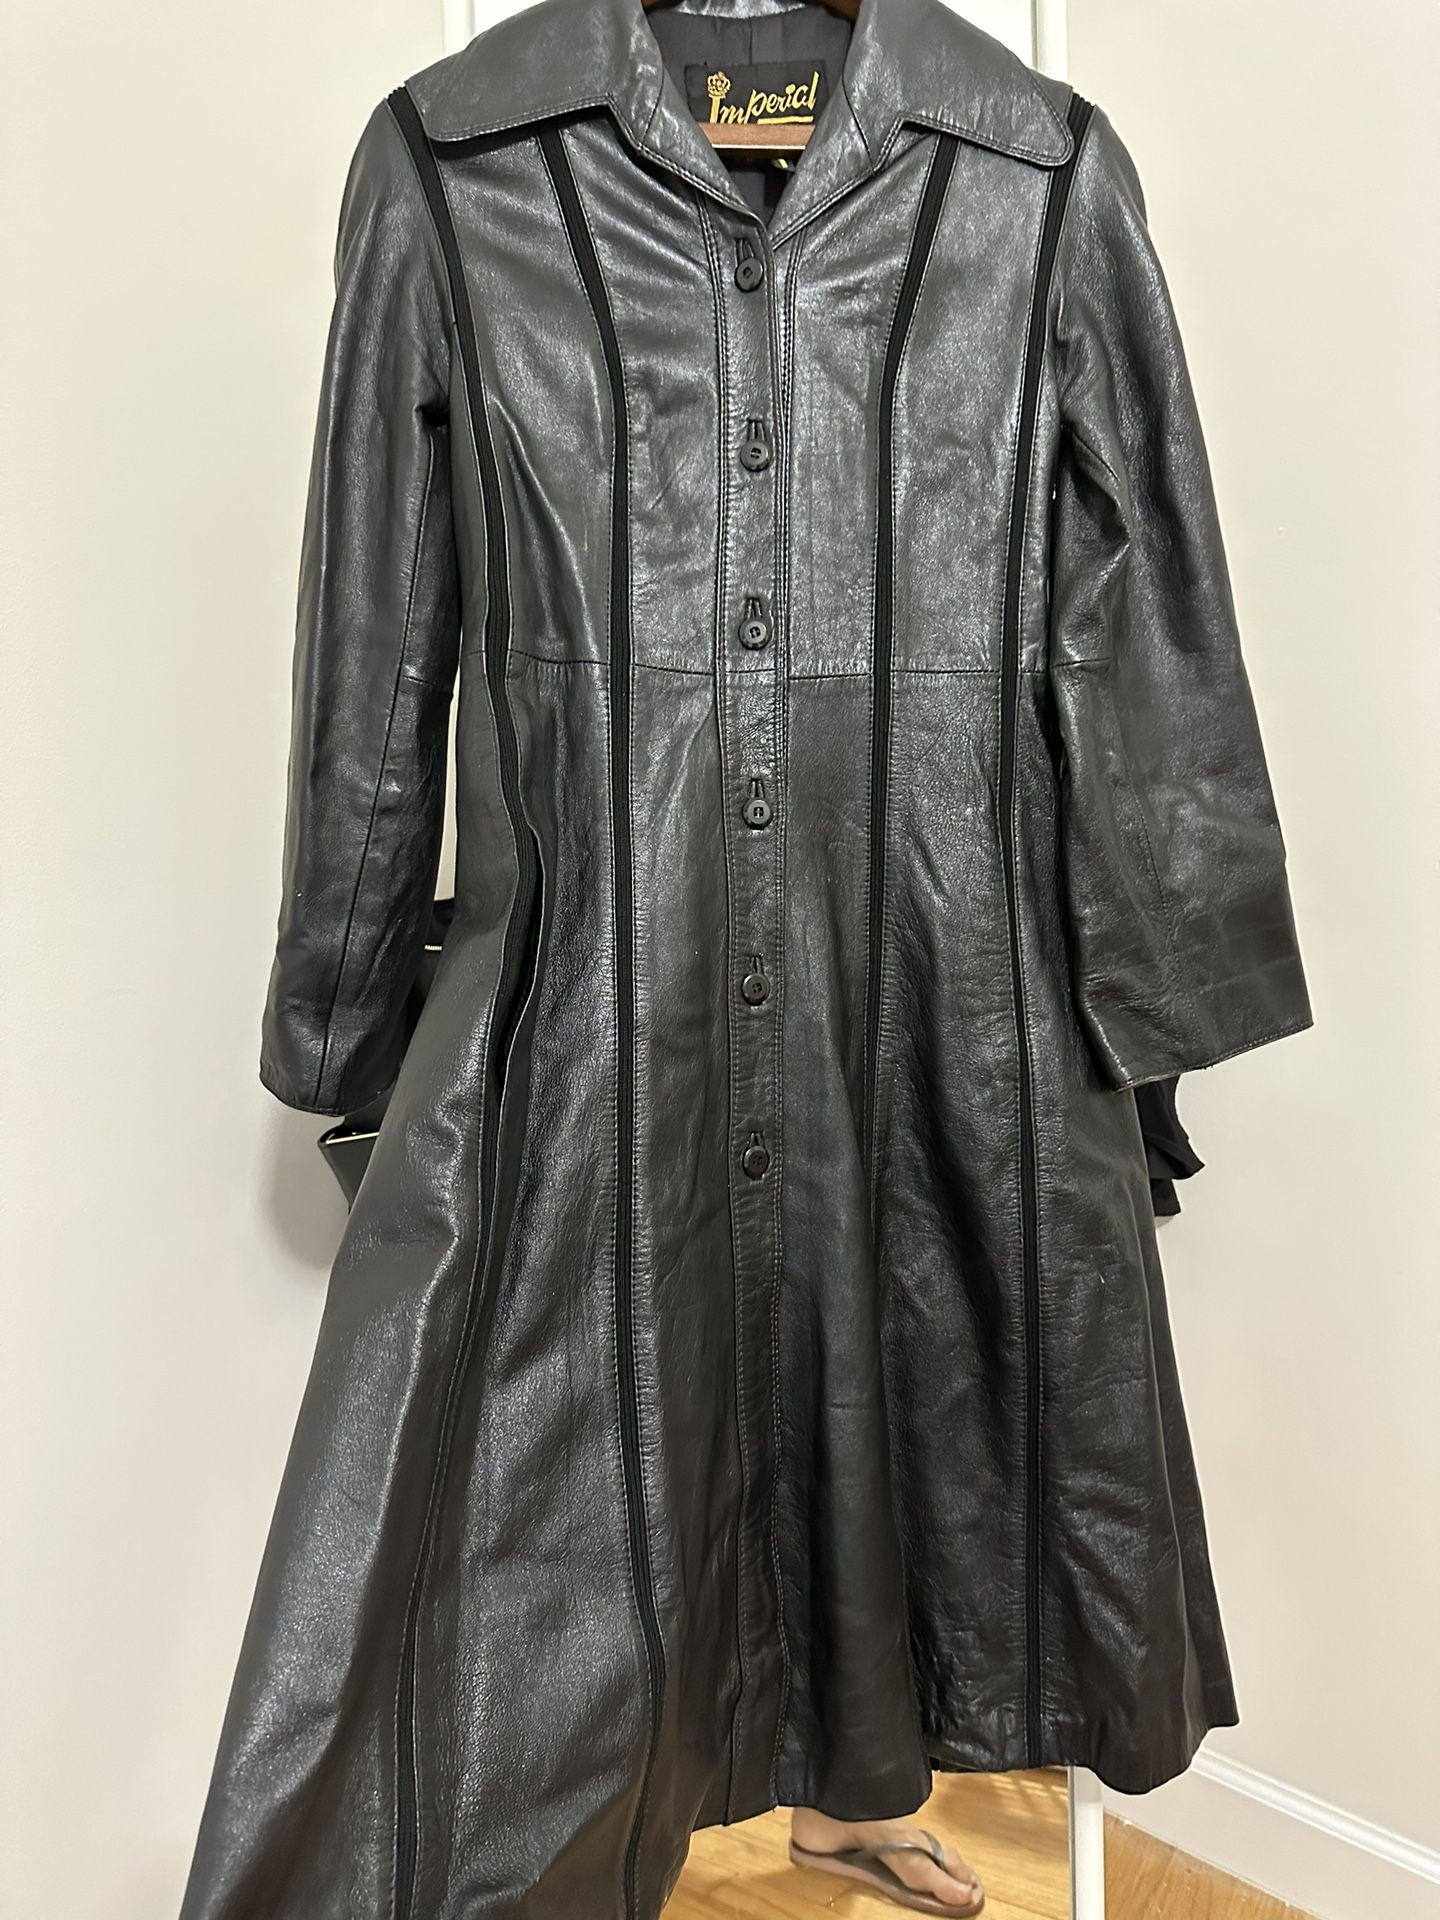 Black Leather Vintage Coat Dress